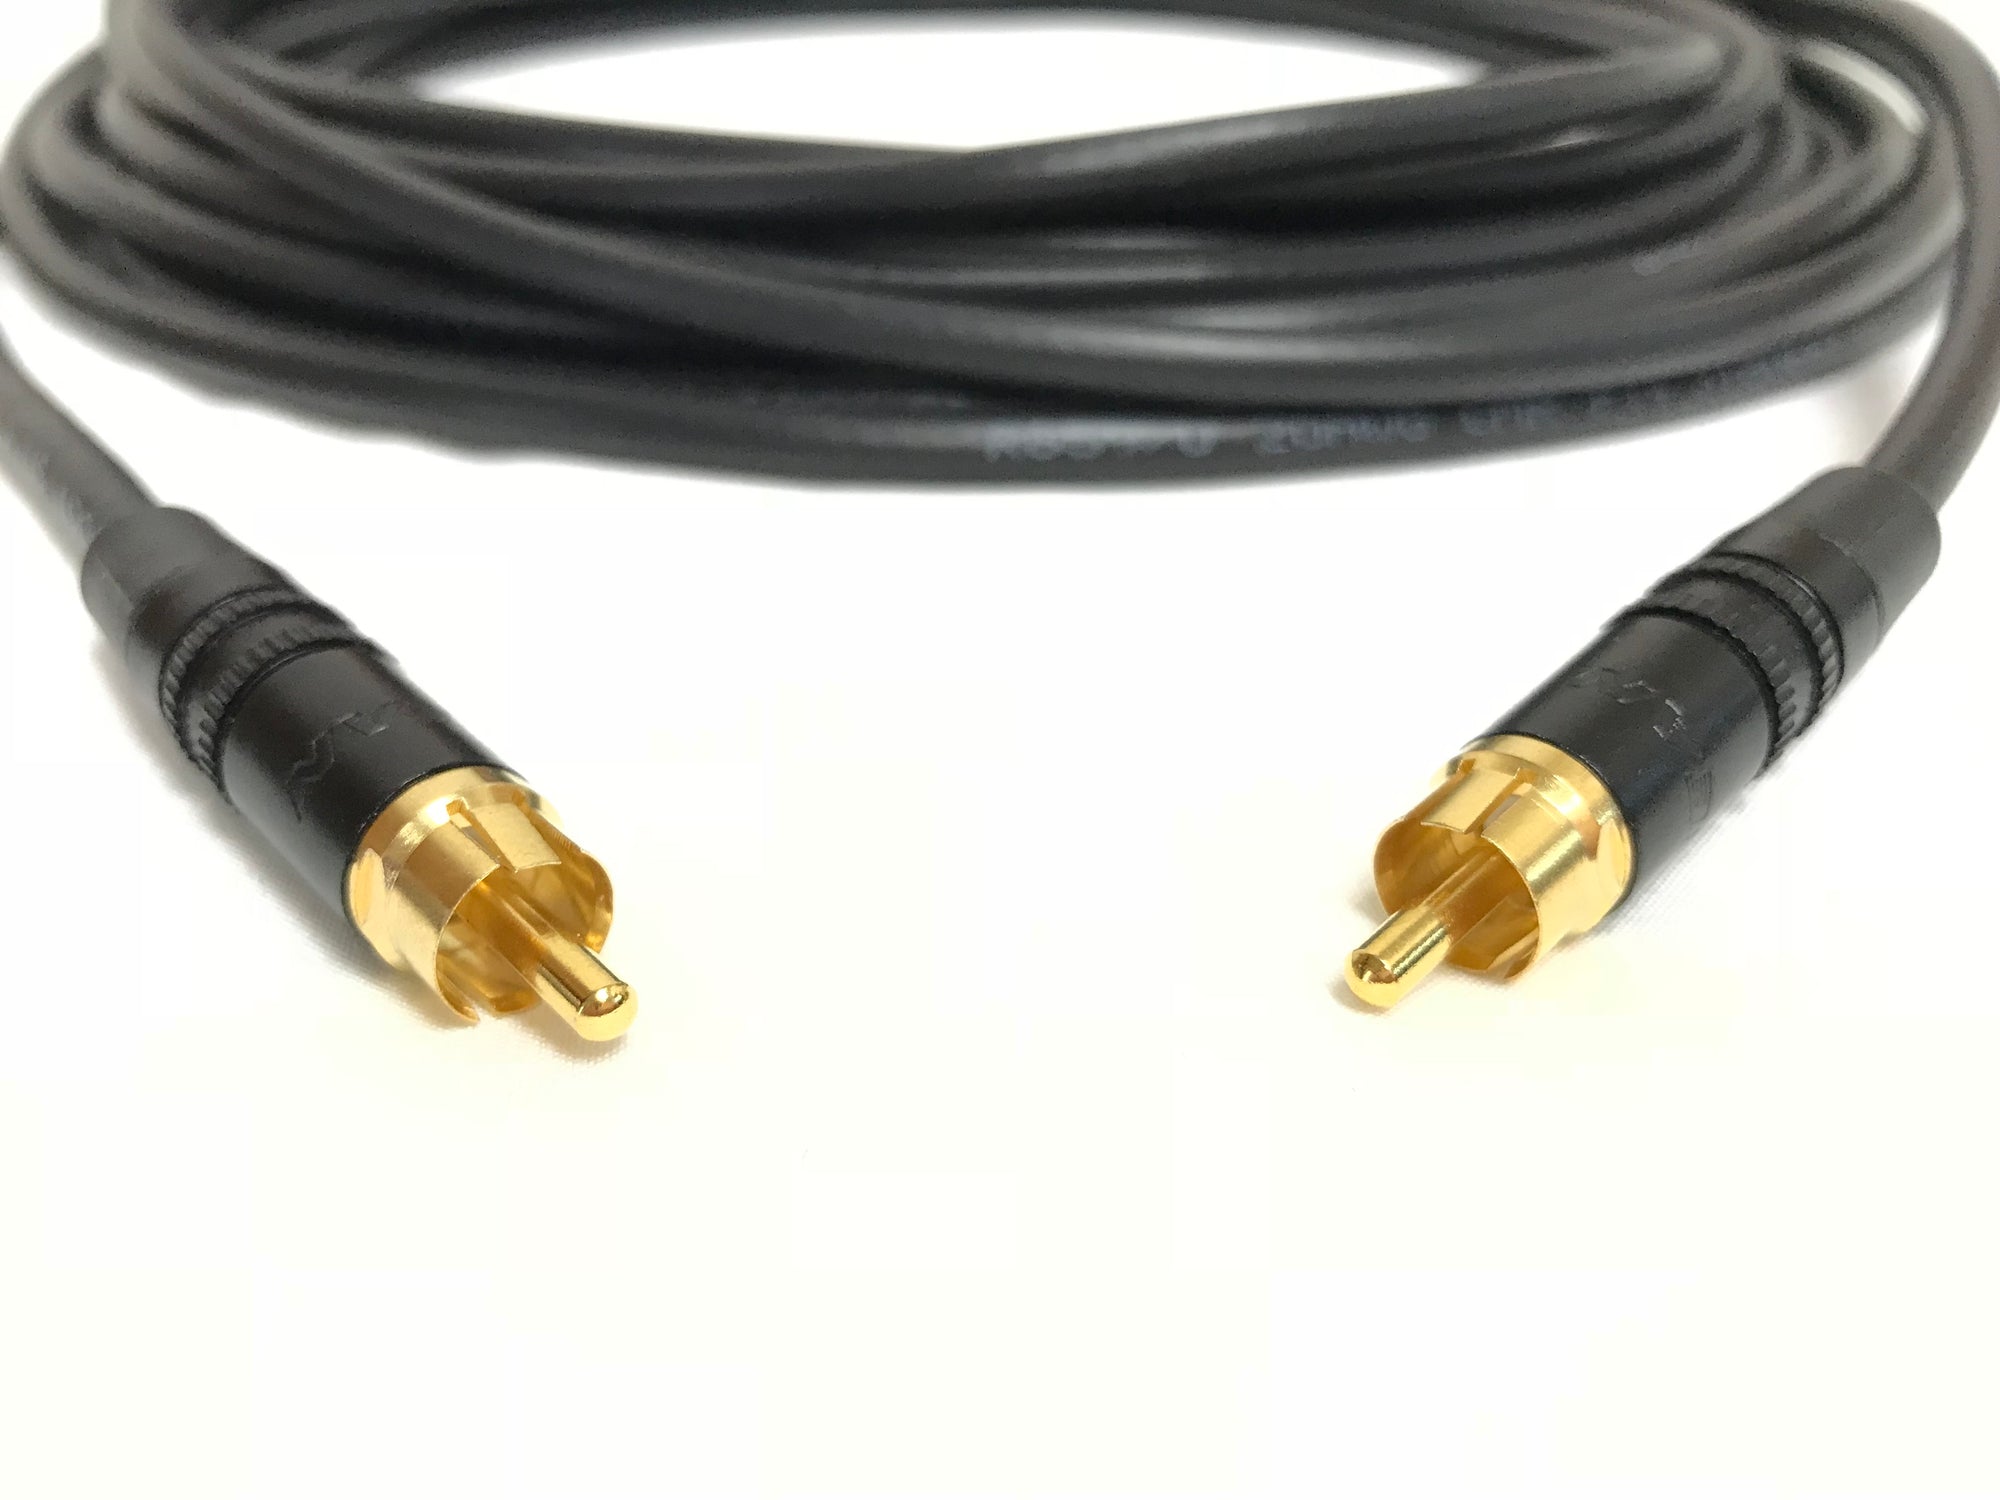 Cable Optico Audio A Rca